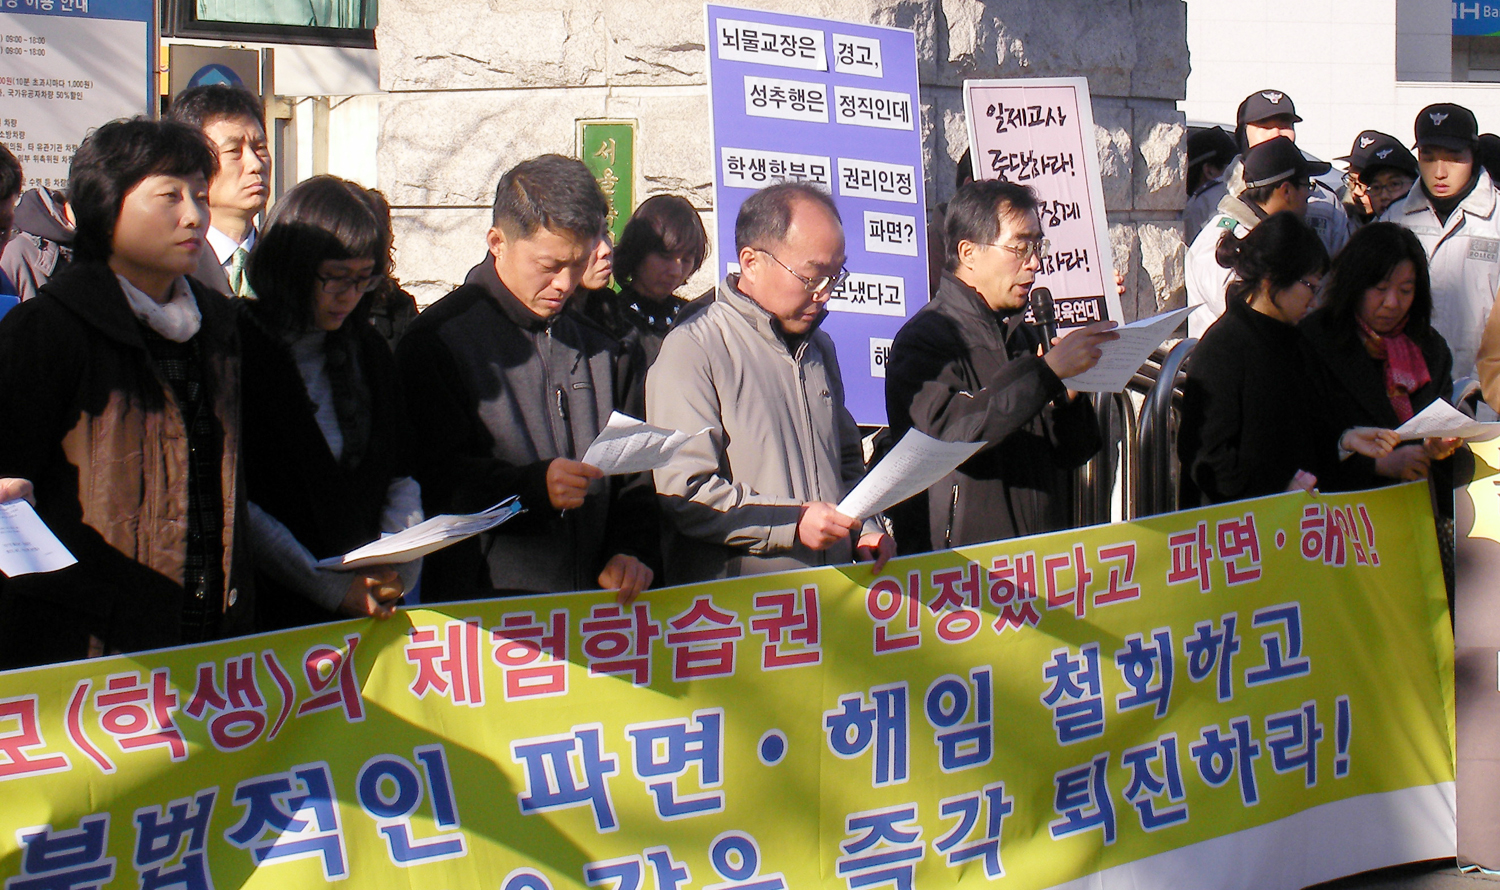 전교조 서울지부와 교육단체들이 11일 서울시 교육청 앞에서 일제고사 당시 체험학습을 허락한 교사들에 대한 중징계에 항의하는 기자회견을 열고 있다. 